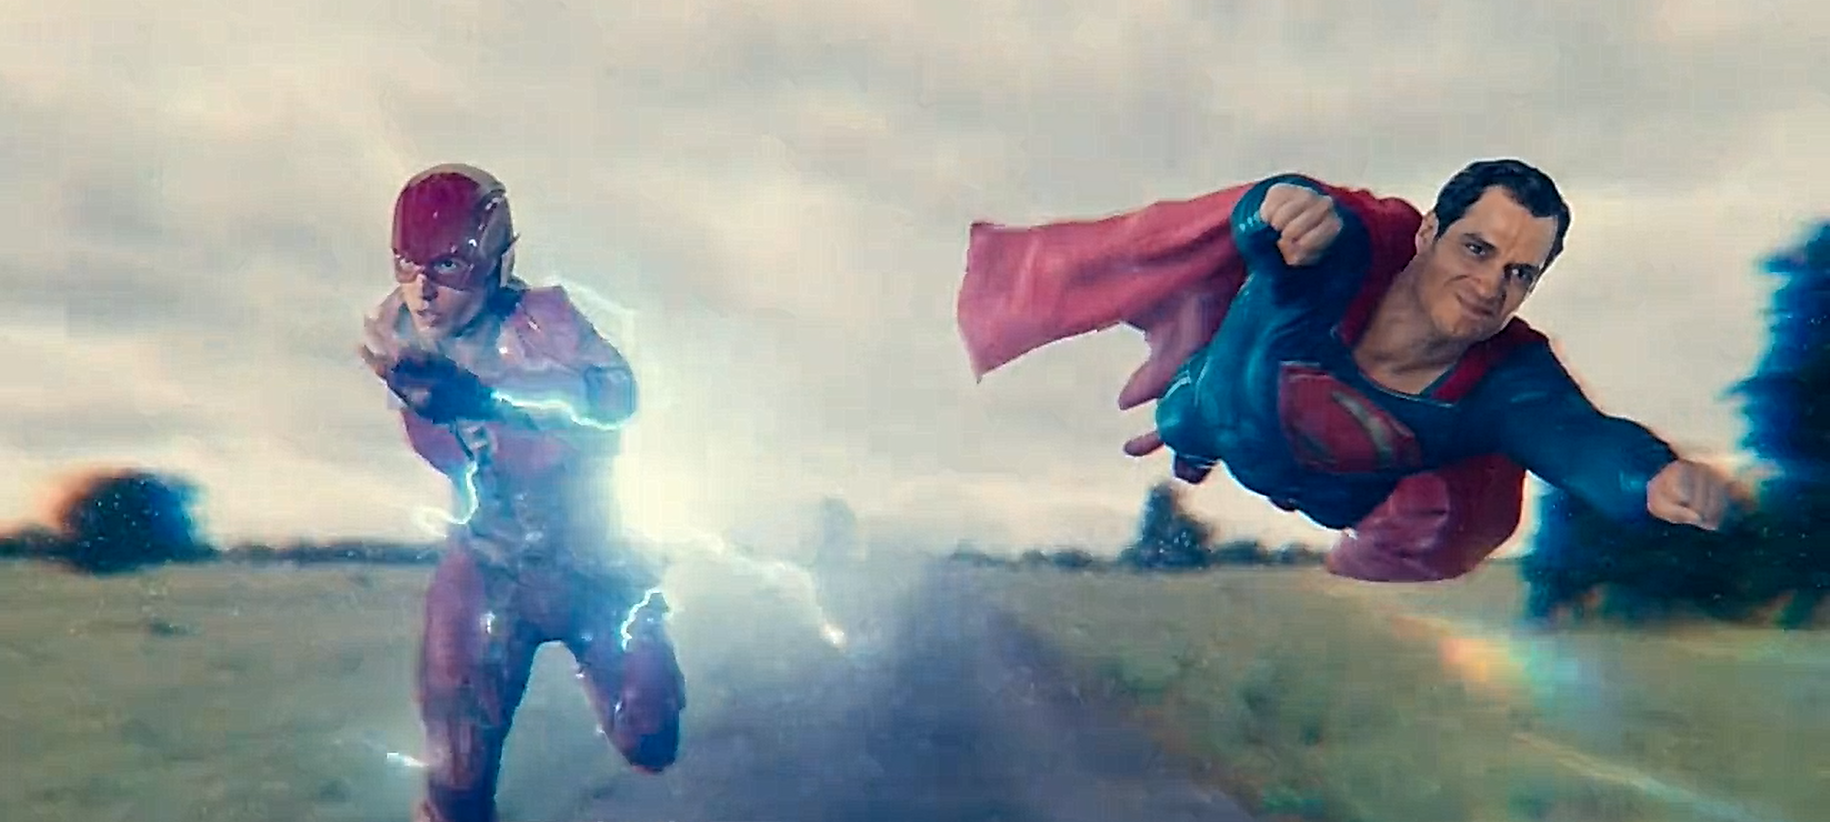 正义联盟:超人和闪电侠赛跑,谁更快?海王:要求增加